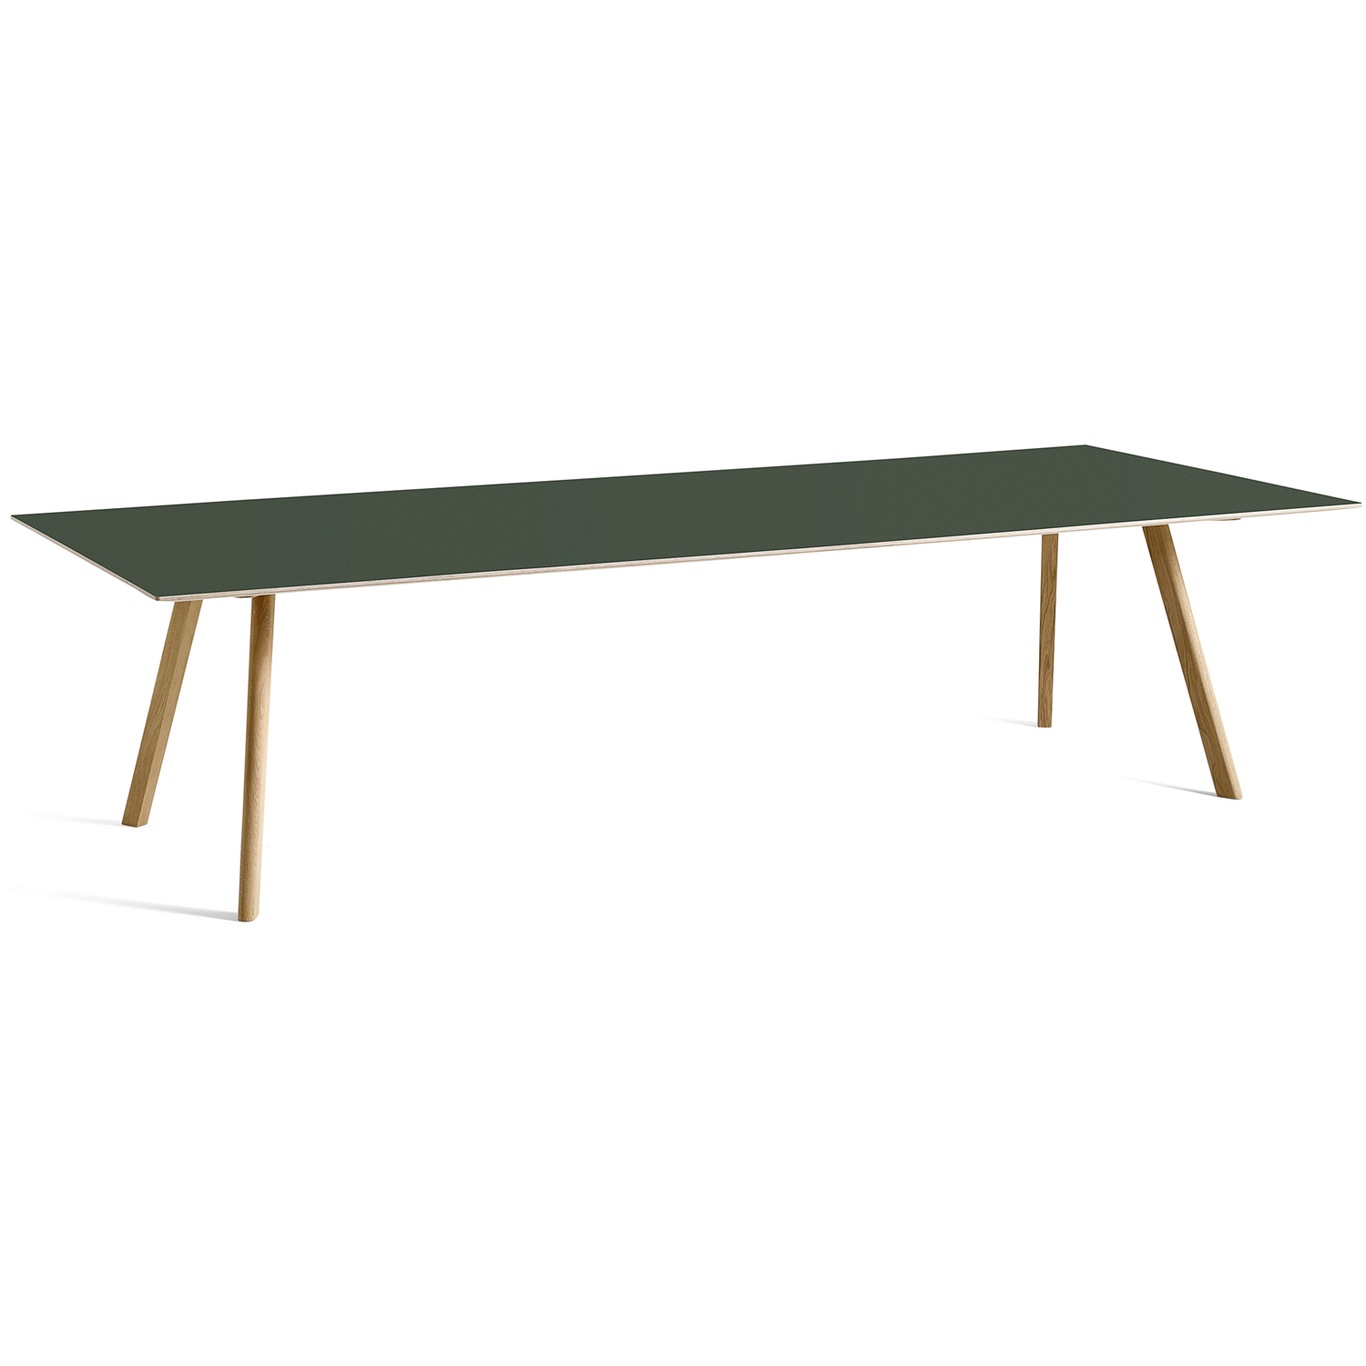 CPH 30 Tisch 300x120 cm, Mit Wasserlack Behandelte Eiche / Grün Linoleum